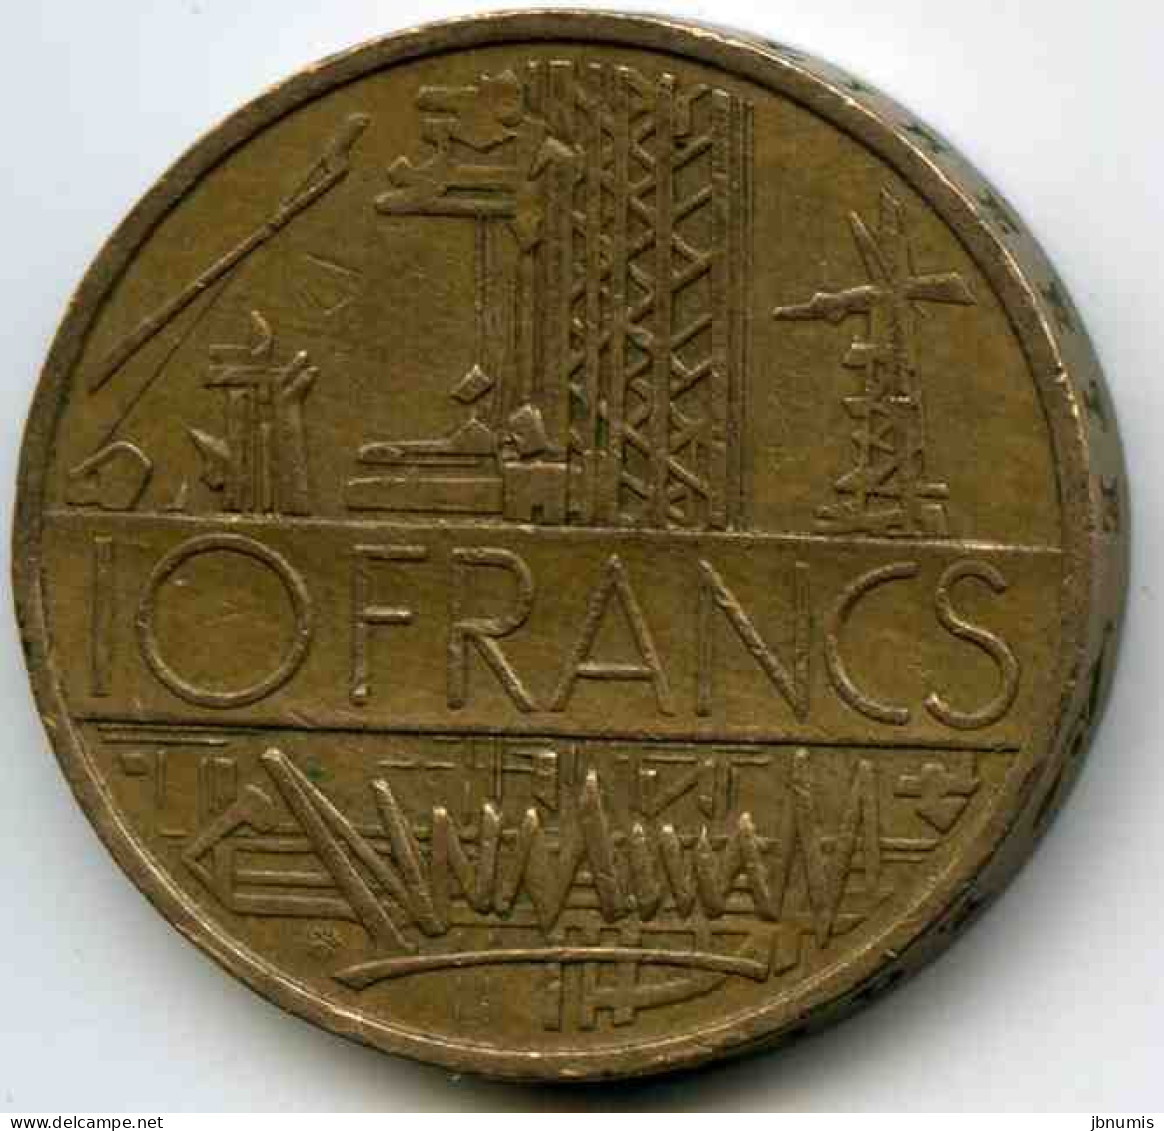 France 10 Francs 1977 Tranche A GAD 814 KM 940 - 10 Francs